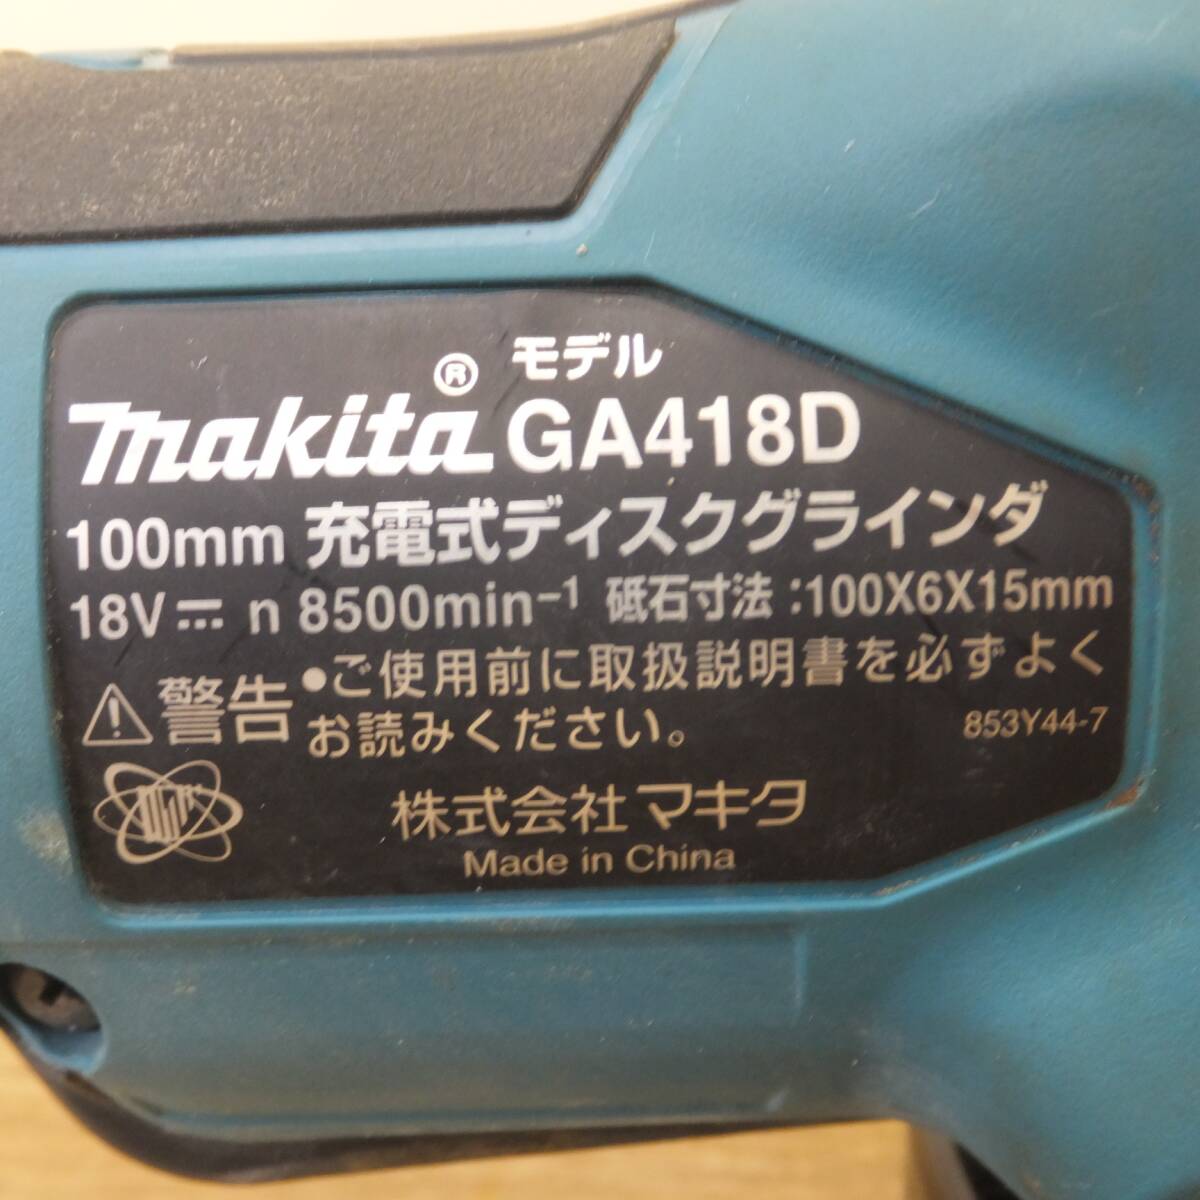 [送料無料] ★マキタ makita 100mm 充電式ディスクグラインダ GA418DRGX 18V バッテリ 1個★の画像4